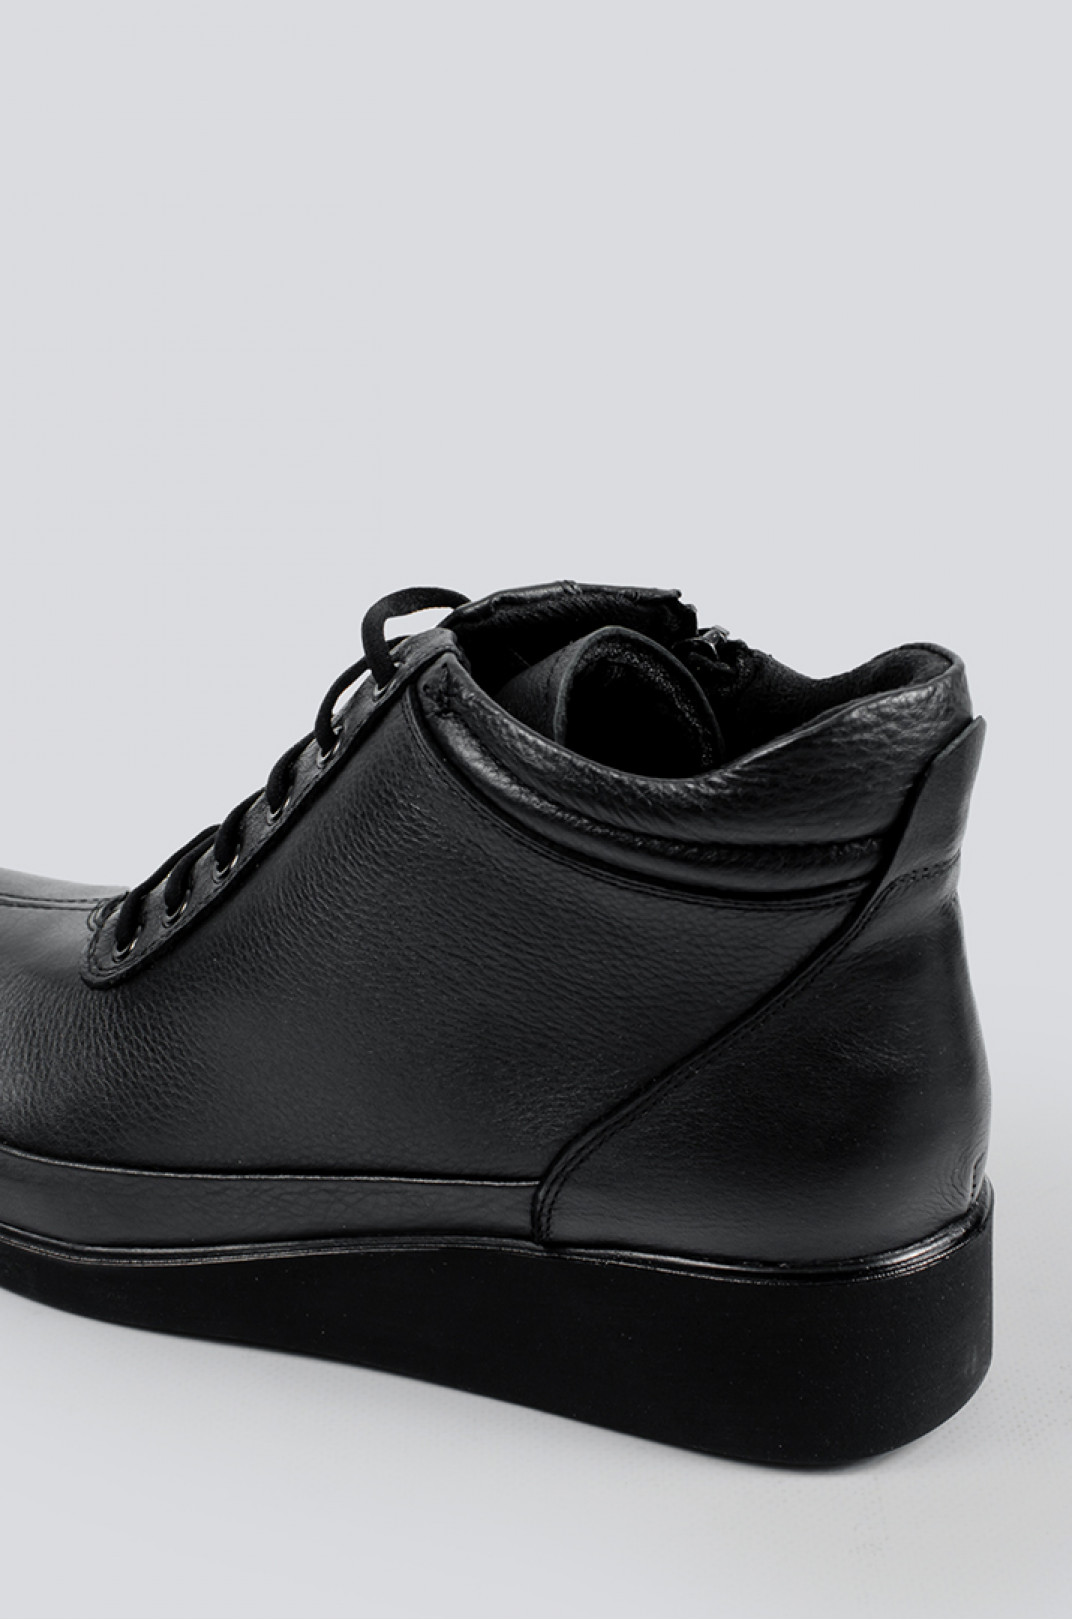 Ботинки кожаные черные со шнурками больших размеров